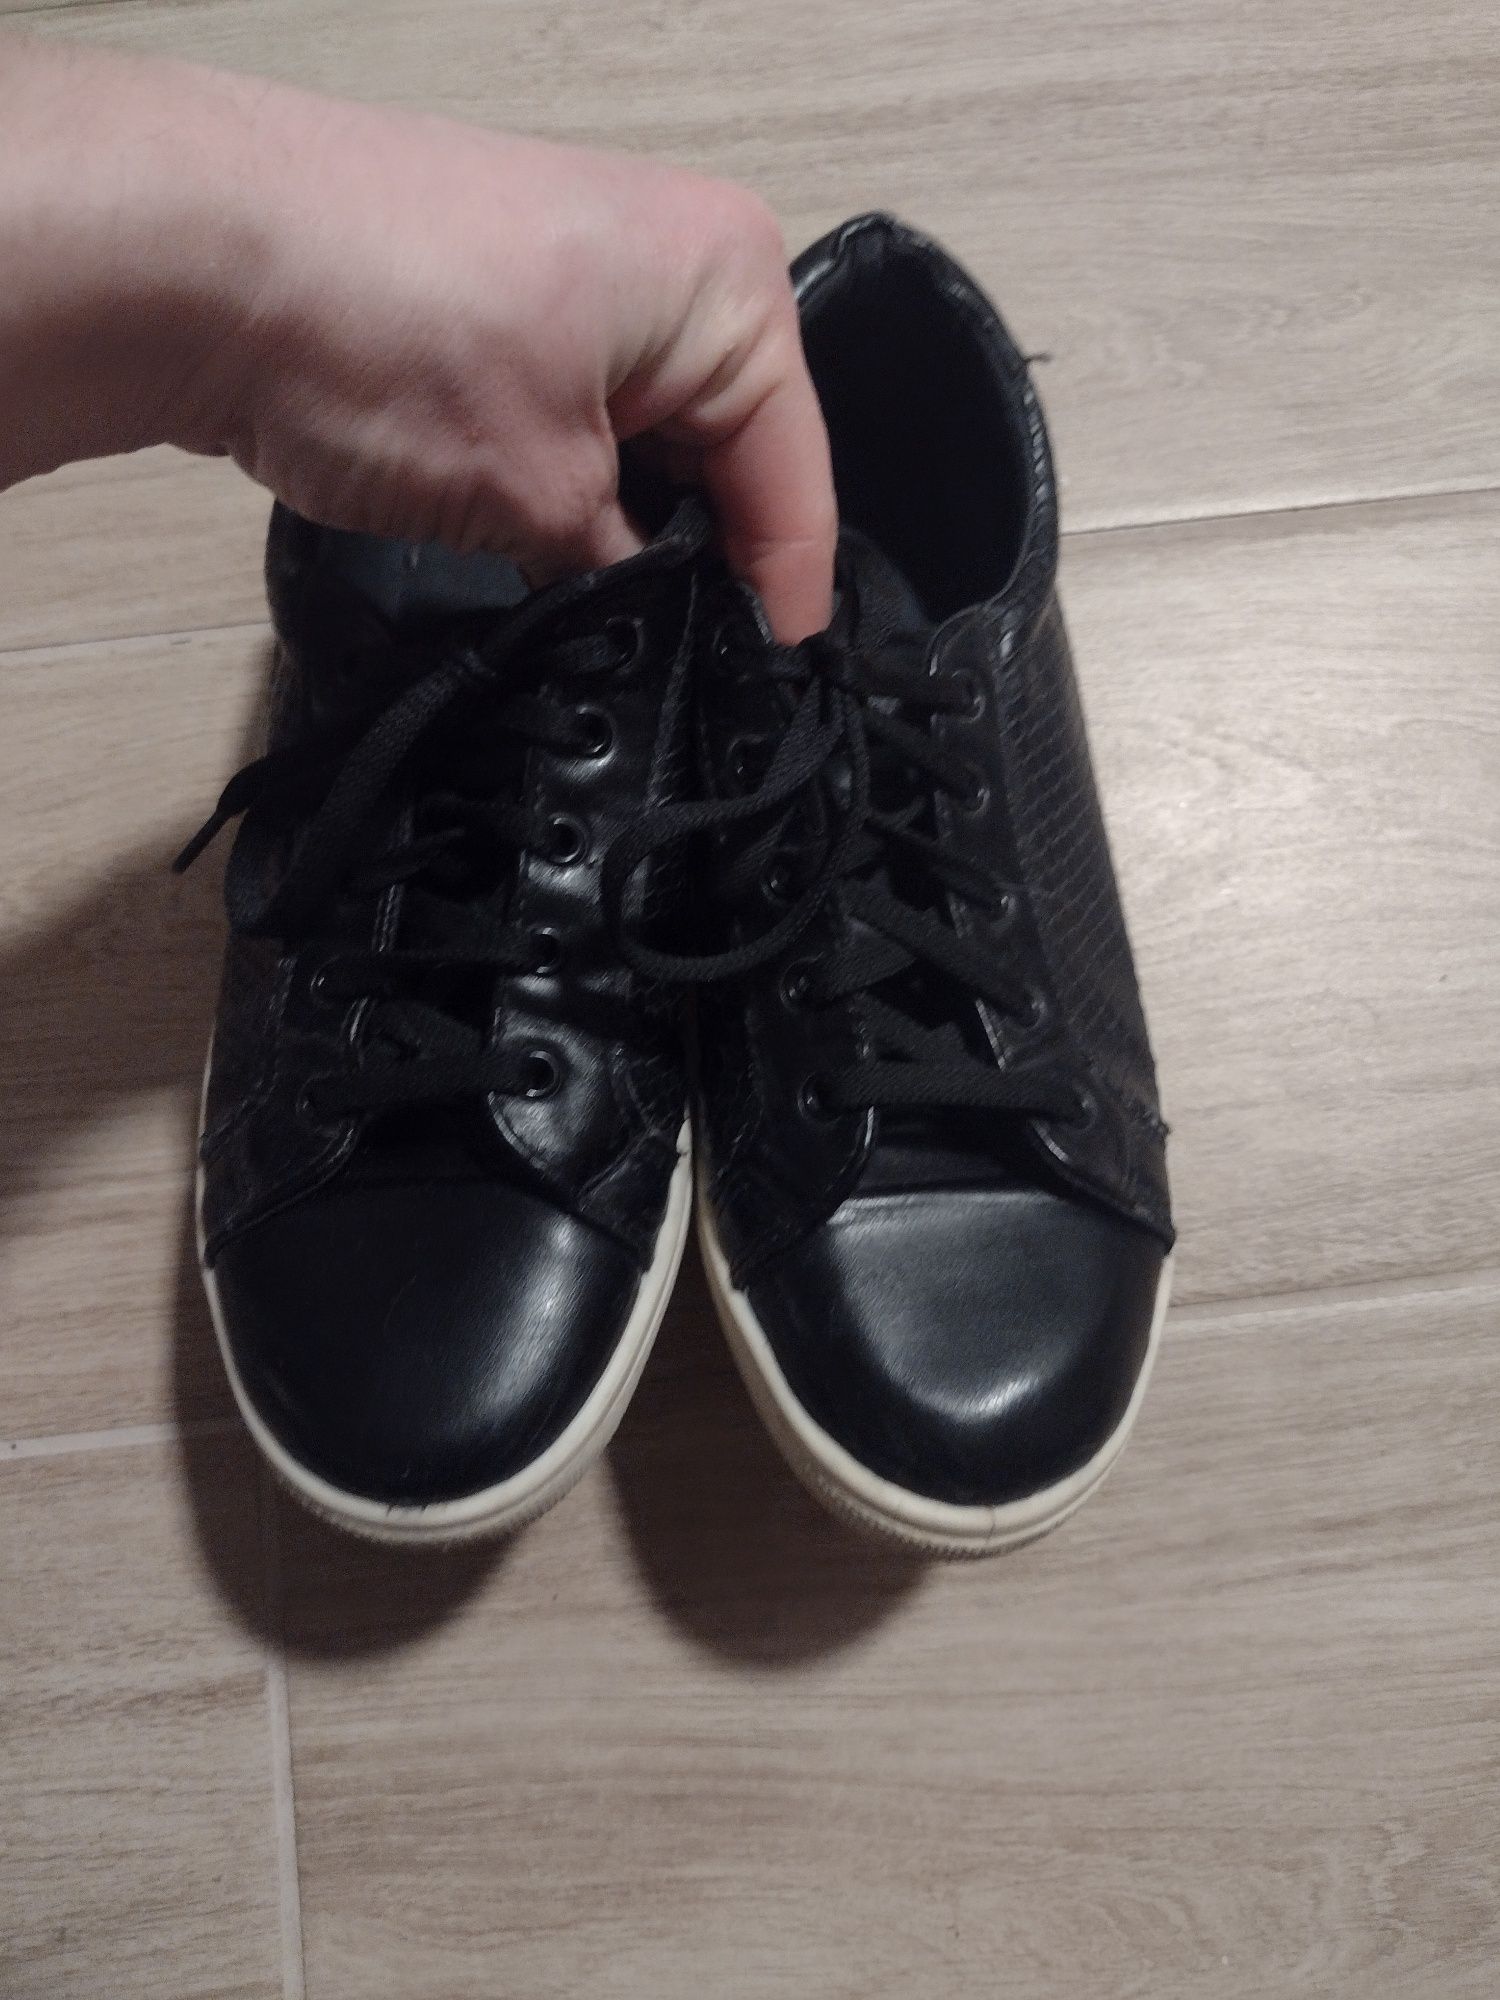 Włoskie buty  botki platforma czarne  topshop 38